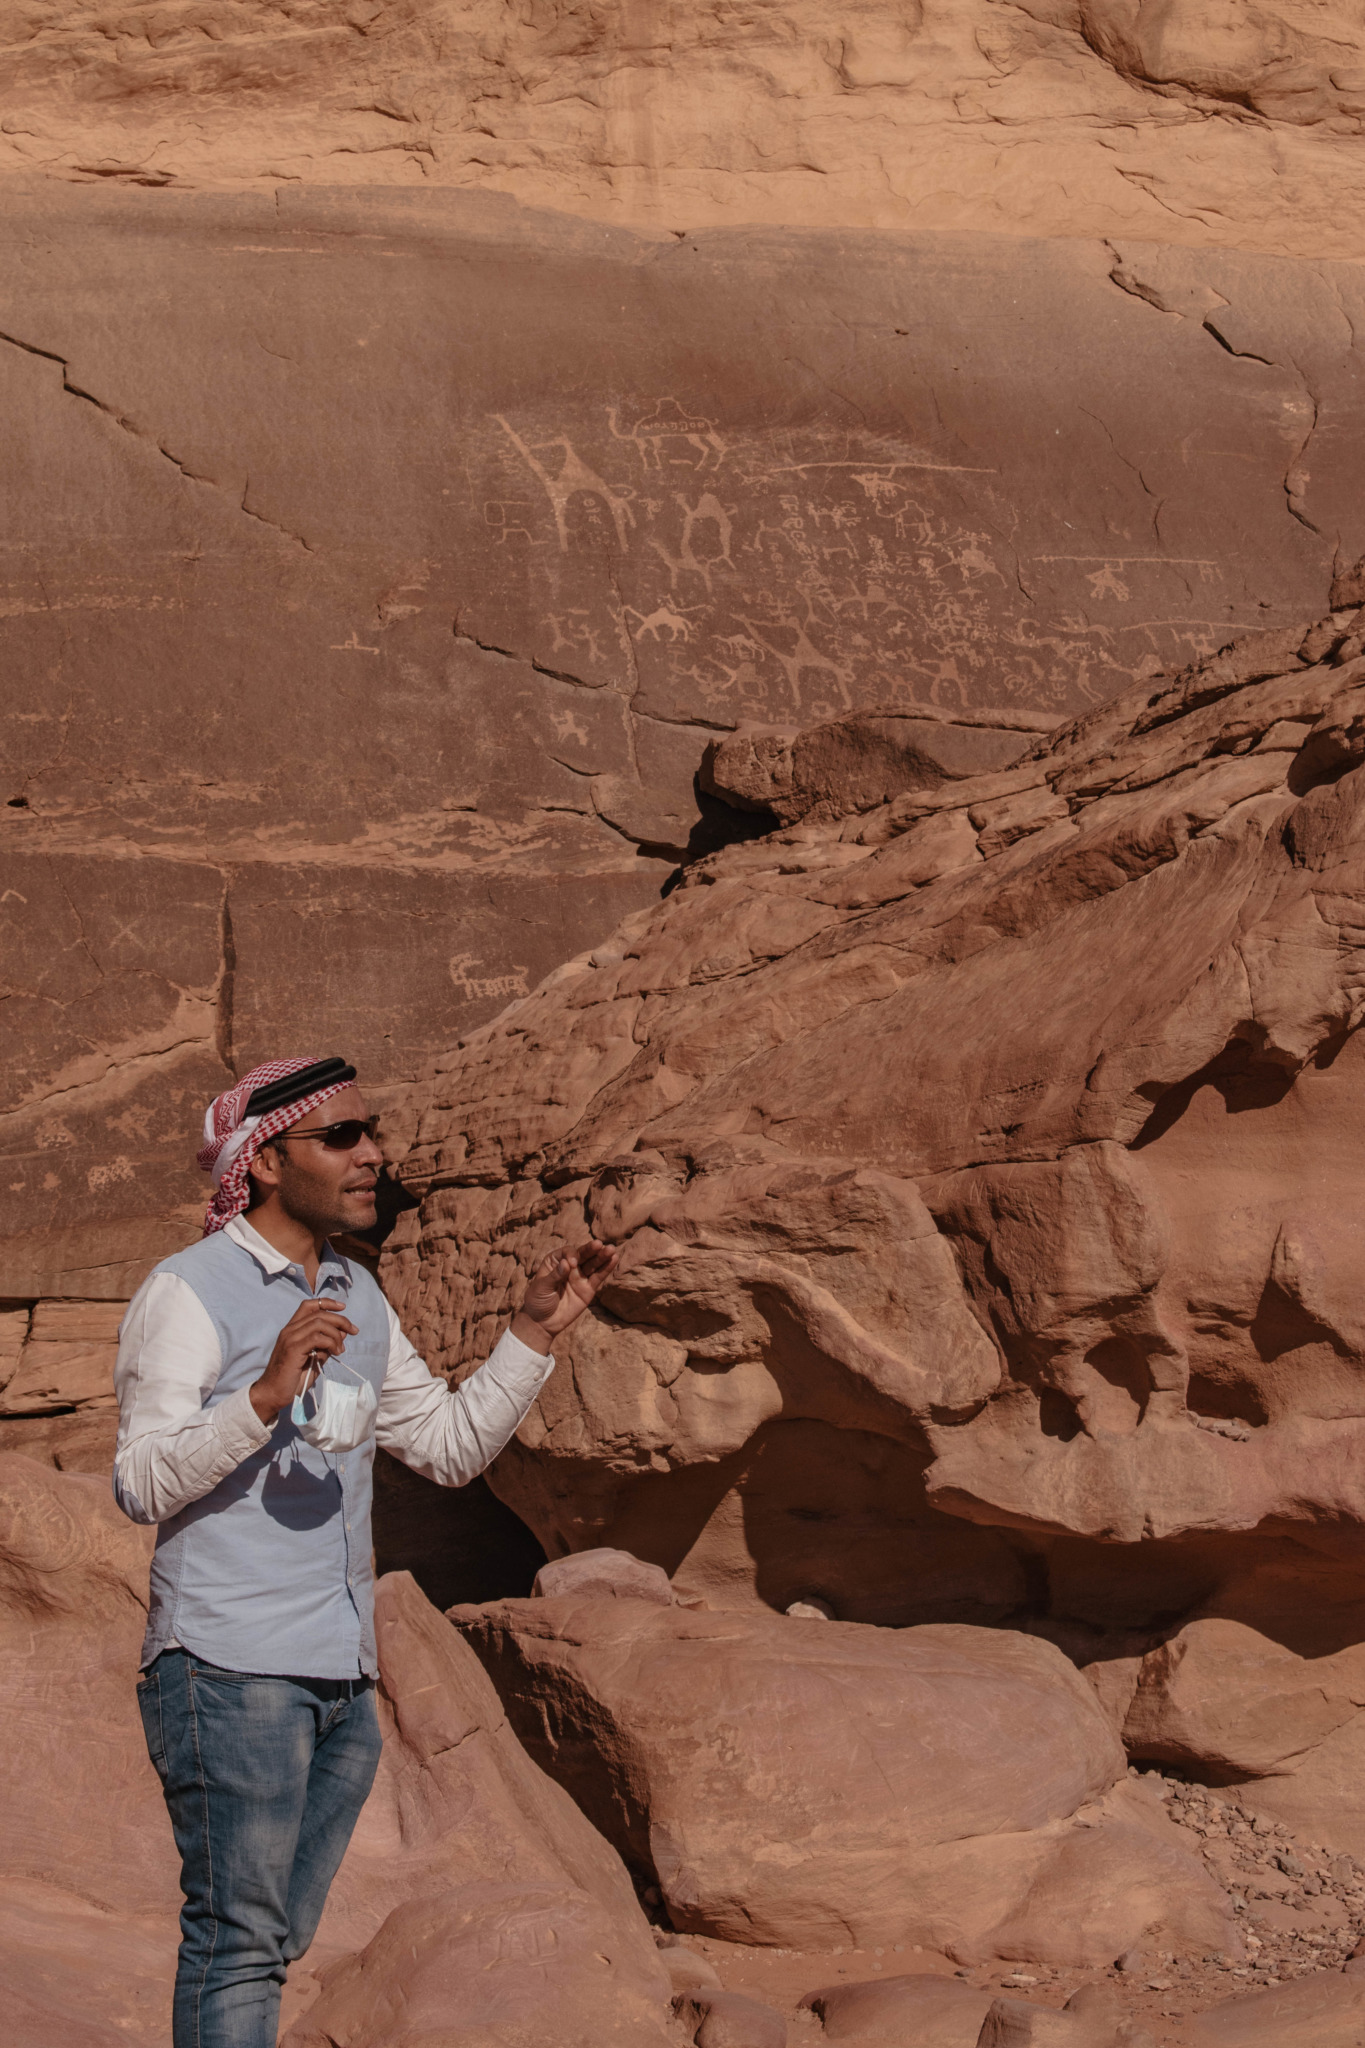 jordanie travel blog